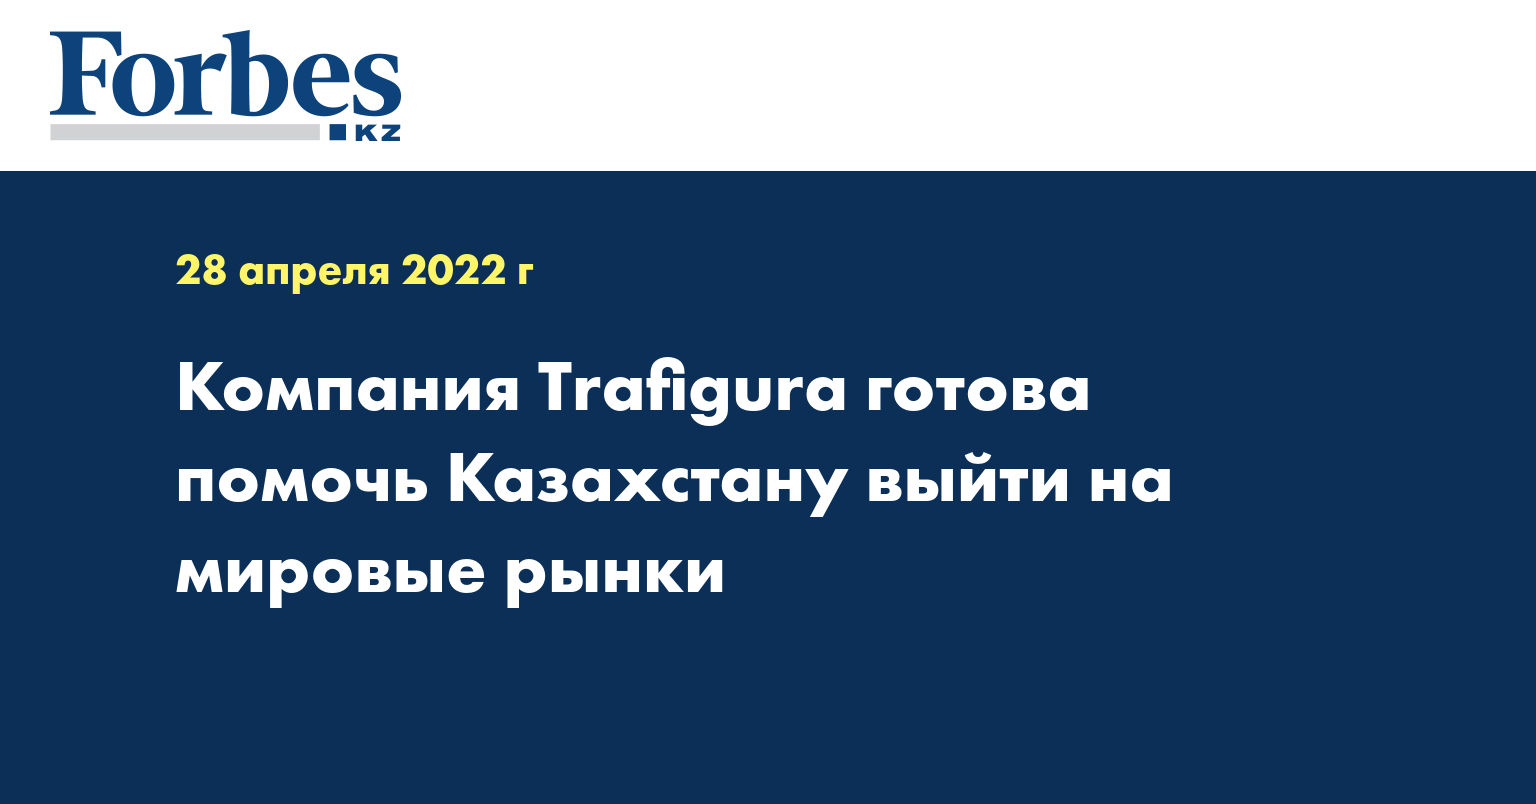 Компания Trafigura готова помочь Казахстану выйти на мировые рынки